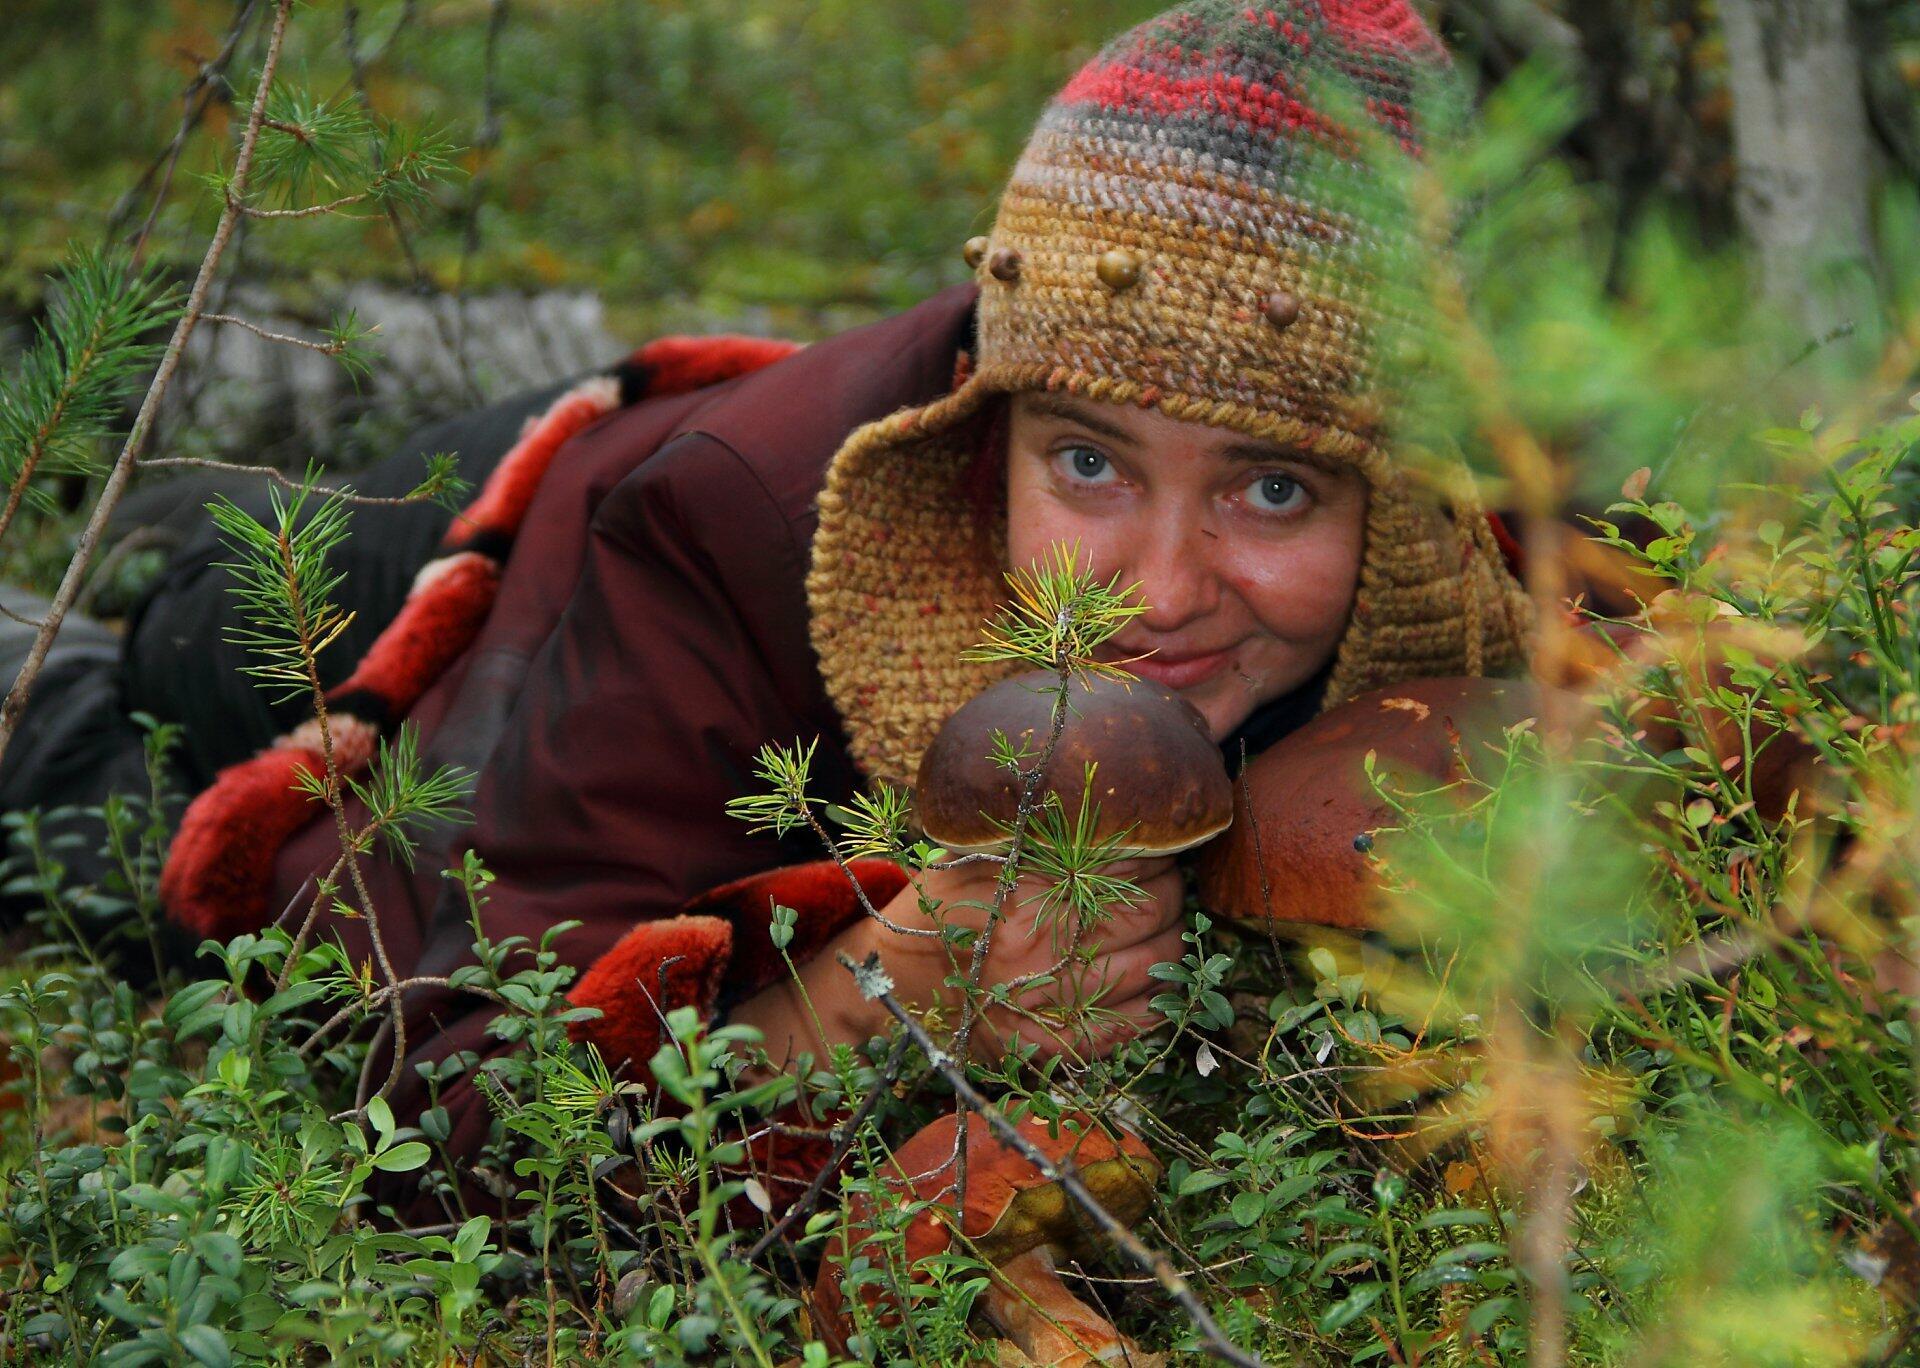 Девочка в лесу собирала грибы